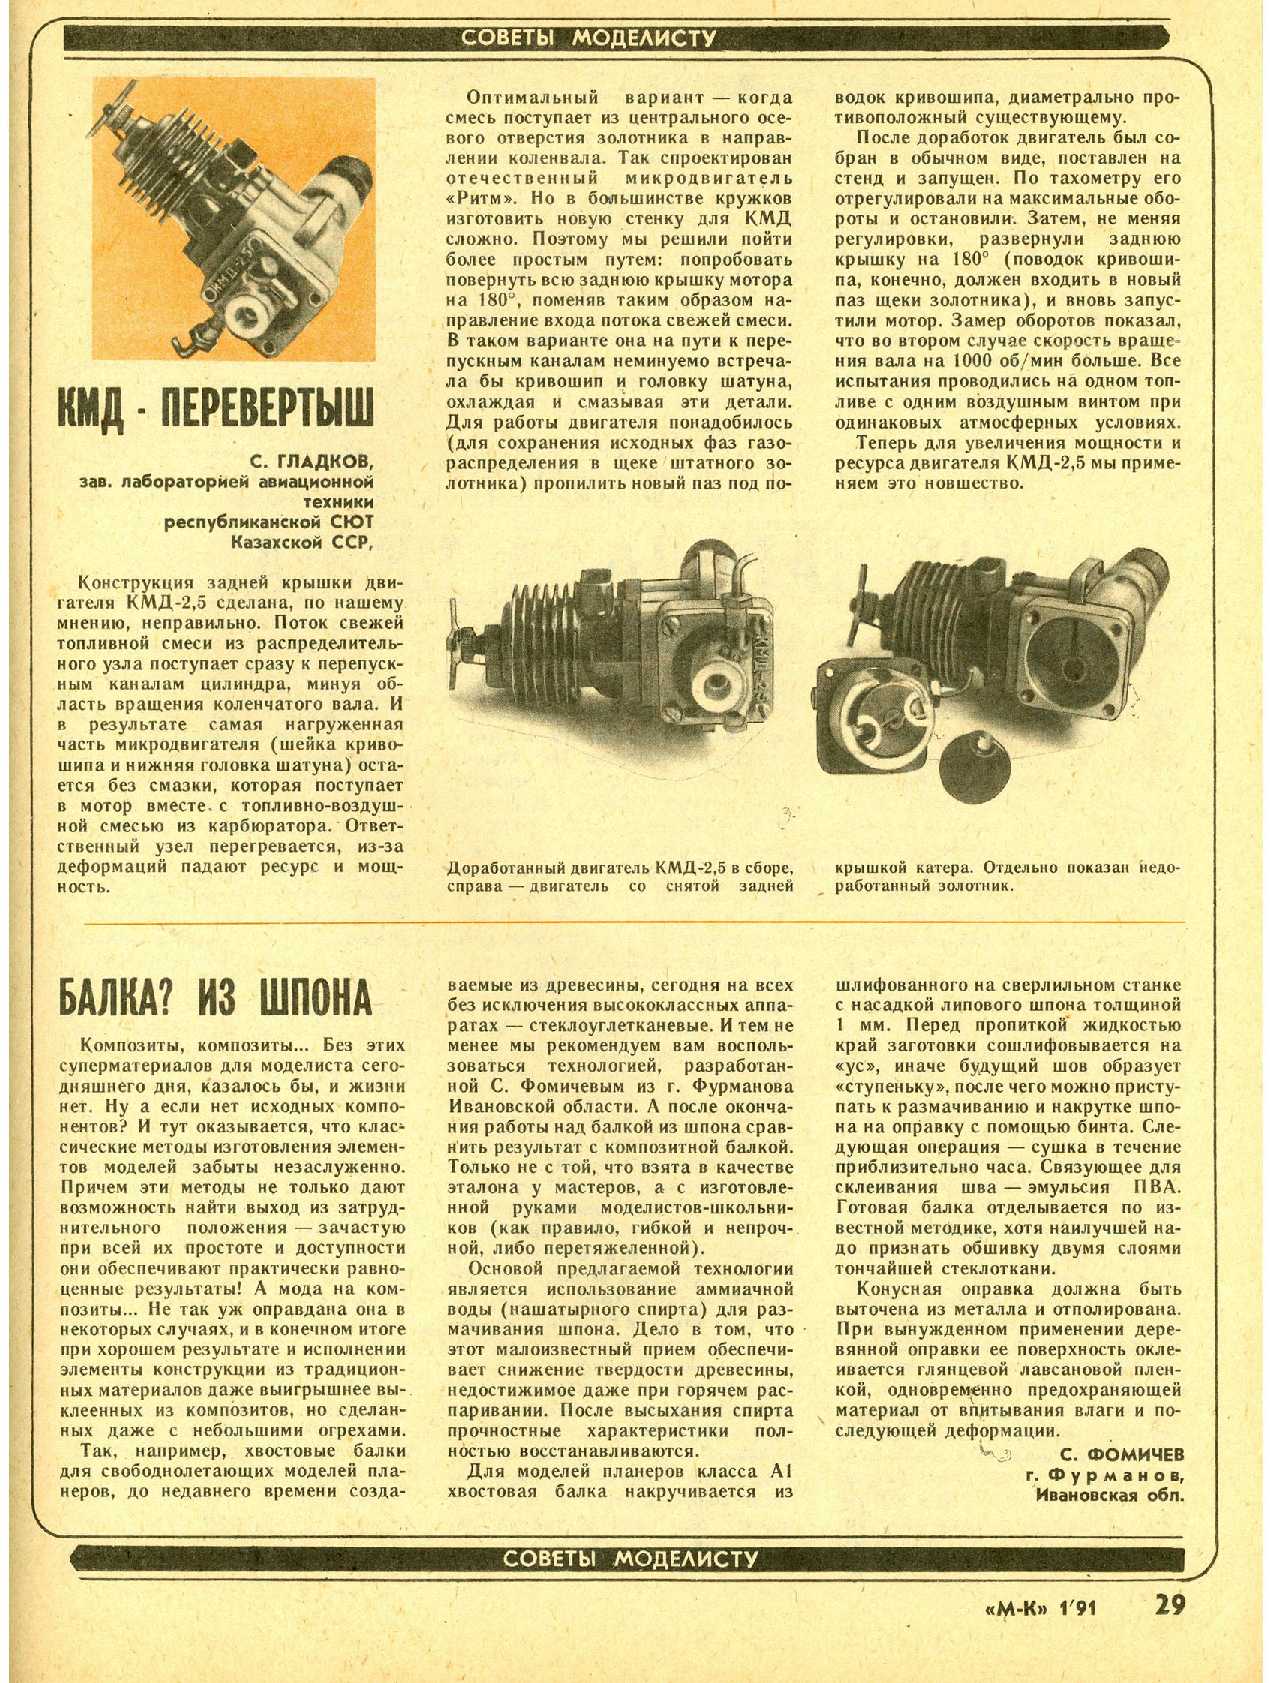 МК 1, 1991, 29 c.